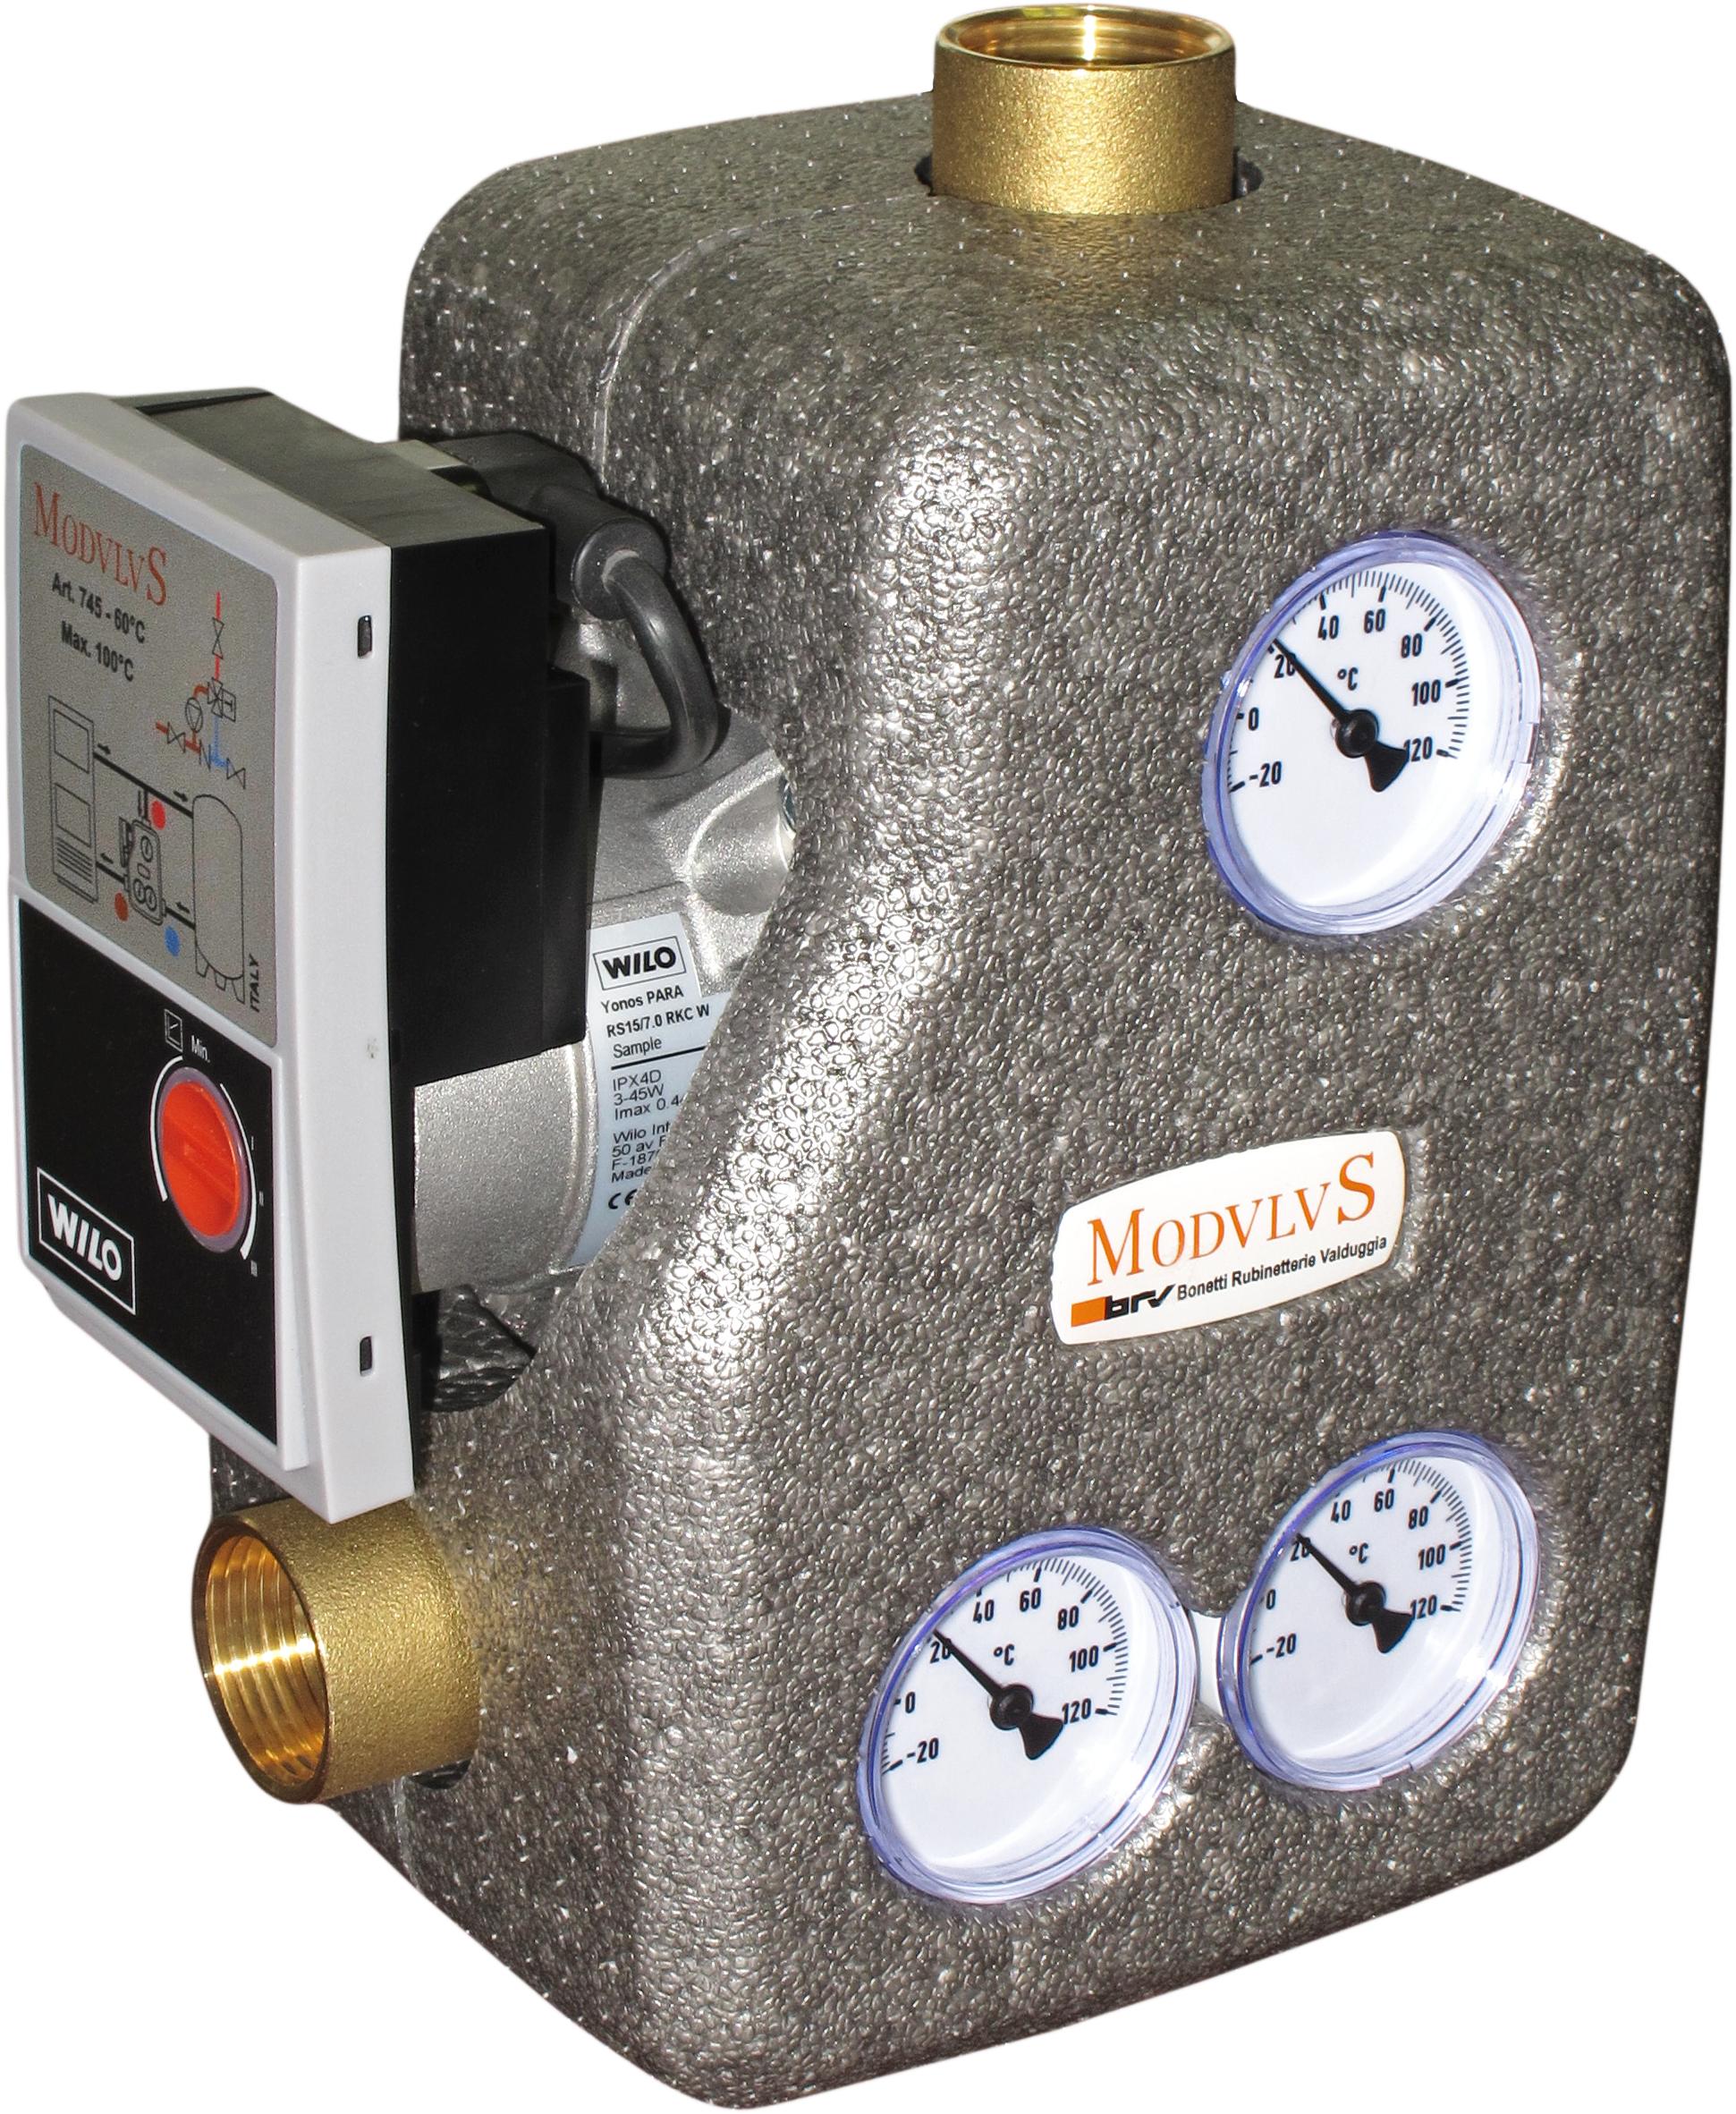 Celsius anticondensing pump unit